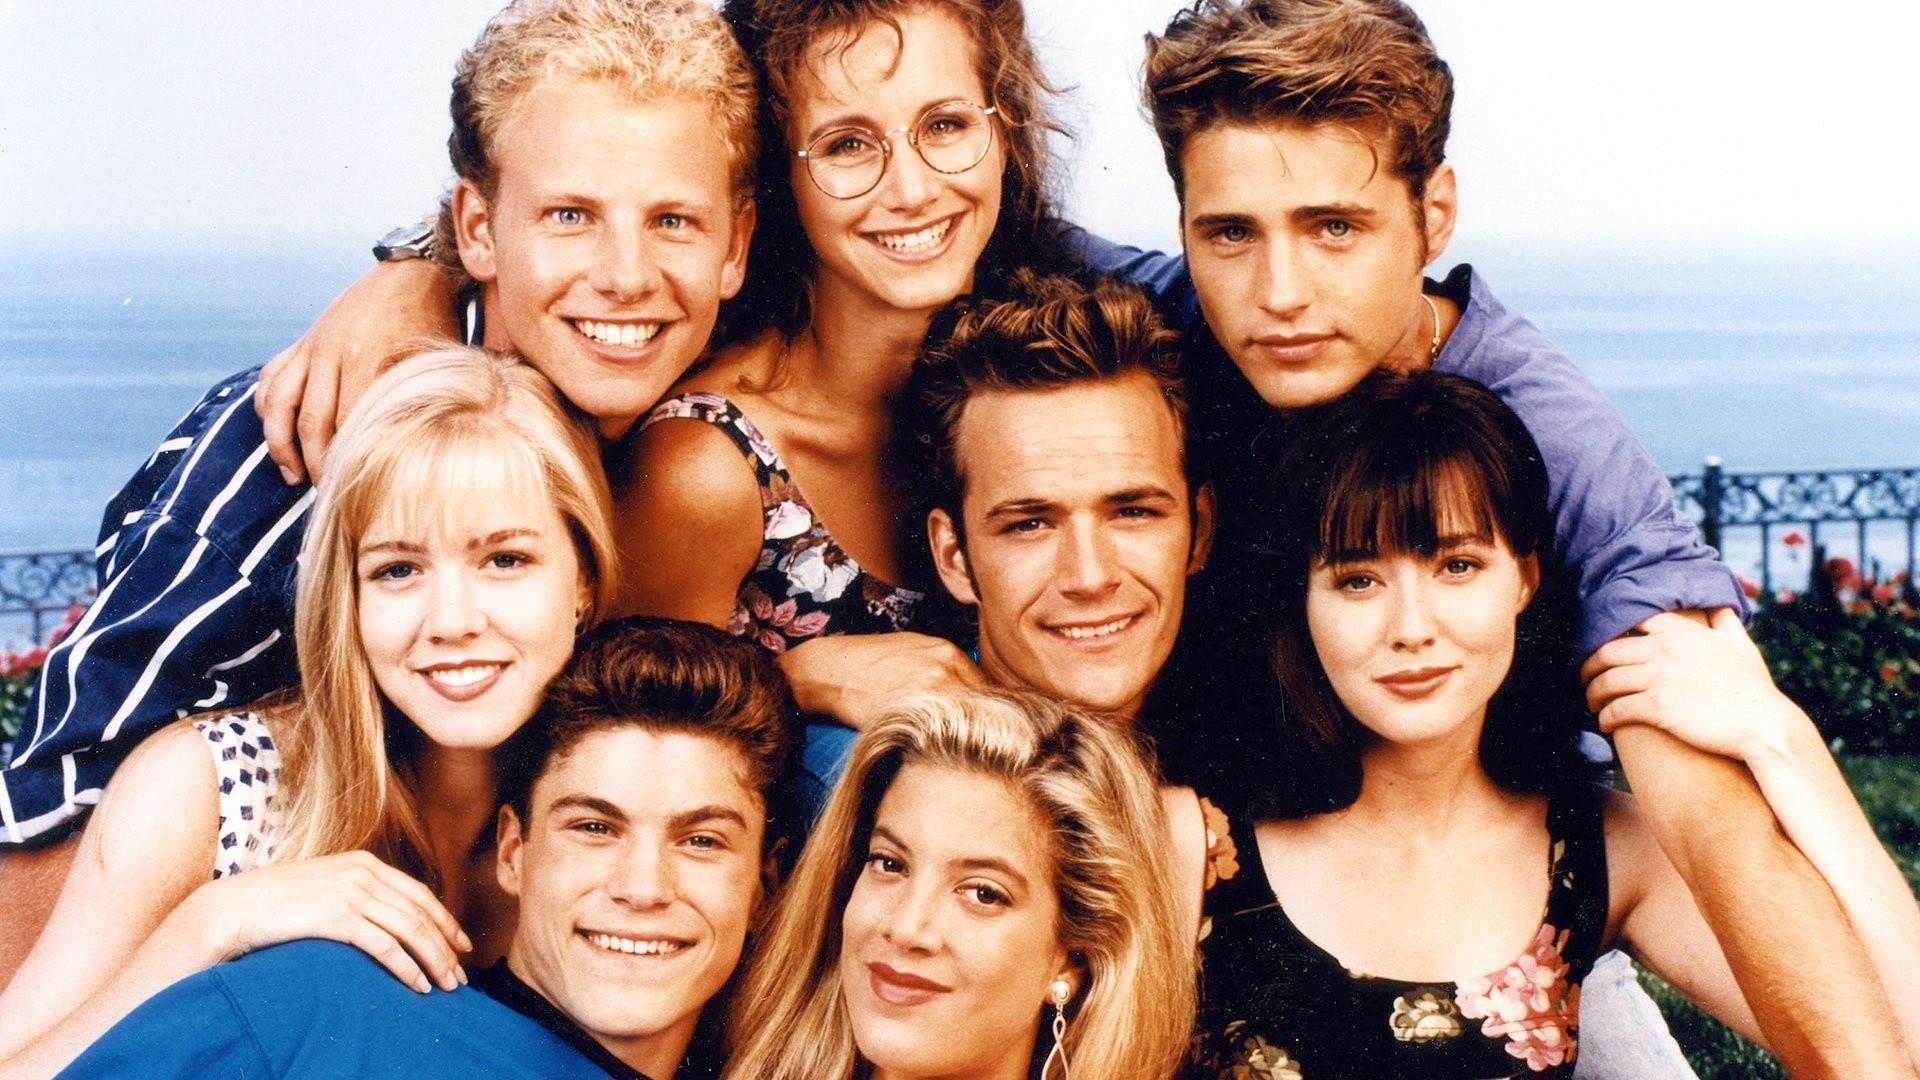 Беверли-Хиллз 90210 – 1 сезон 7 серия «Идеальная мама» / Beverly Hills, 90210